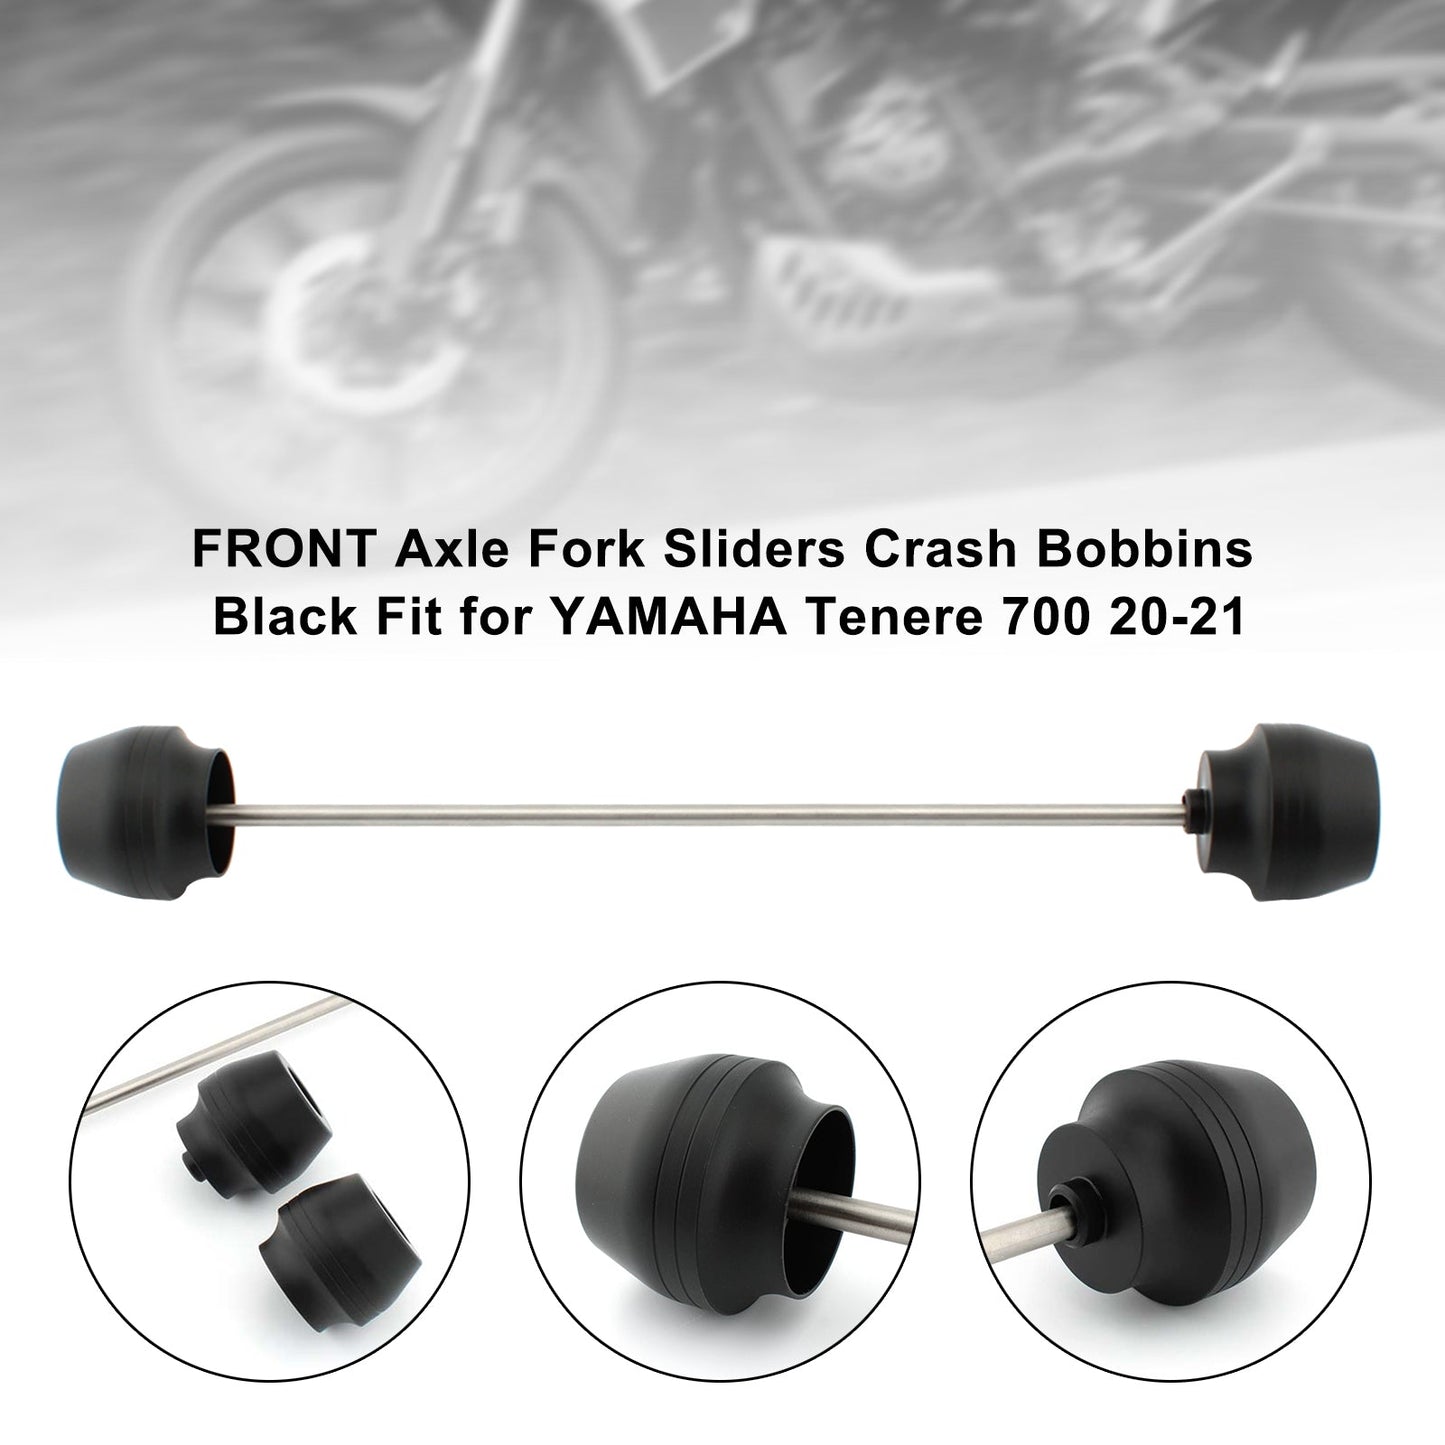 Front Axle Fork Sliders Crash Bobbins Black Fit For Yamaha Tenere 700 20-21